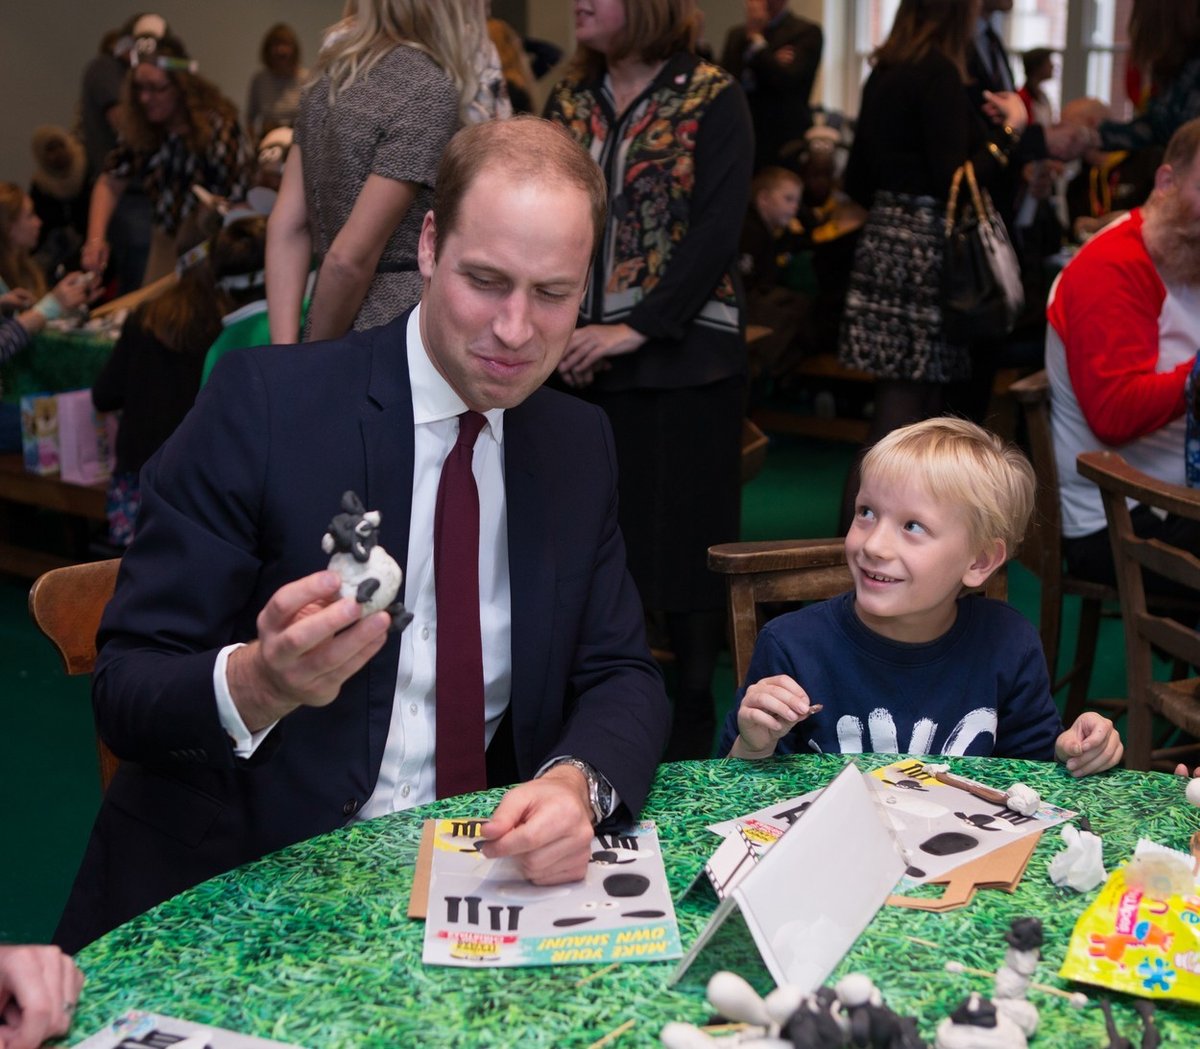 Vévodkyně Kate a královští bratři William a Harry se zúčastnili charitativní akce s dětmi u příležitosti premiéry nového filmu o ovečce Shaun.